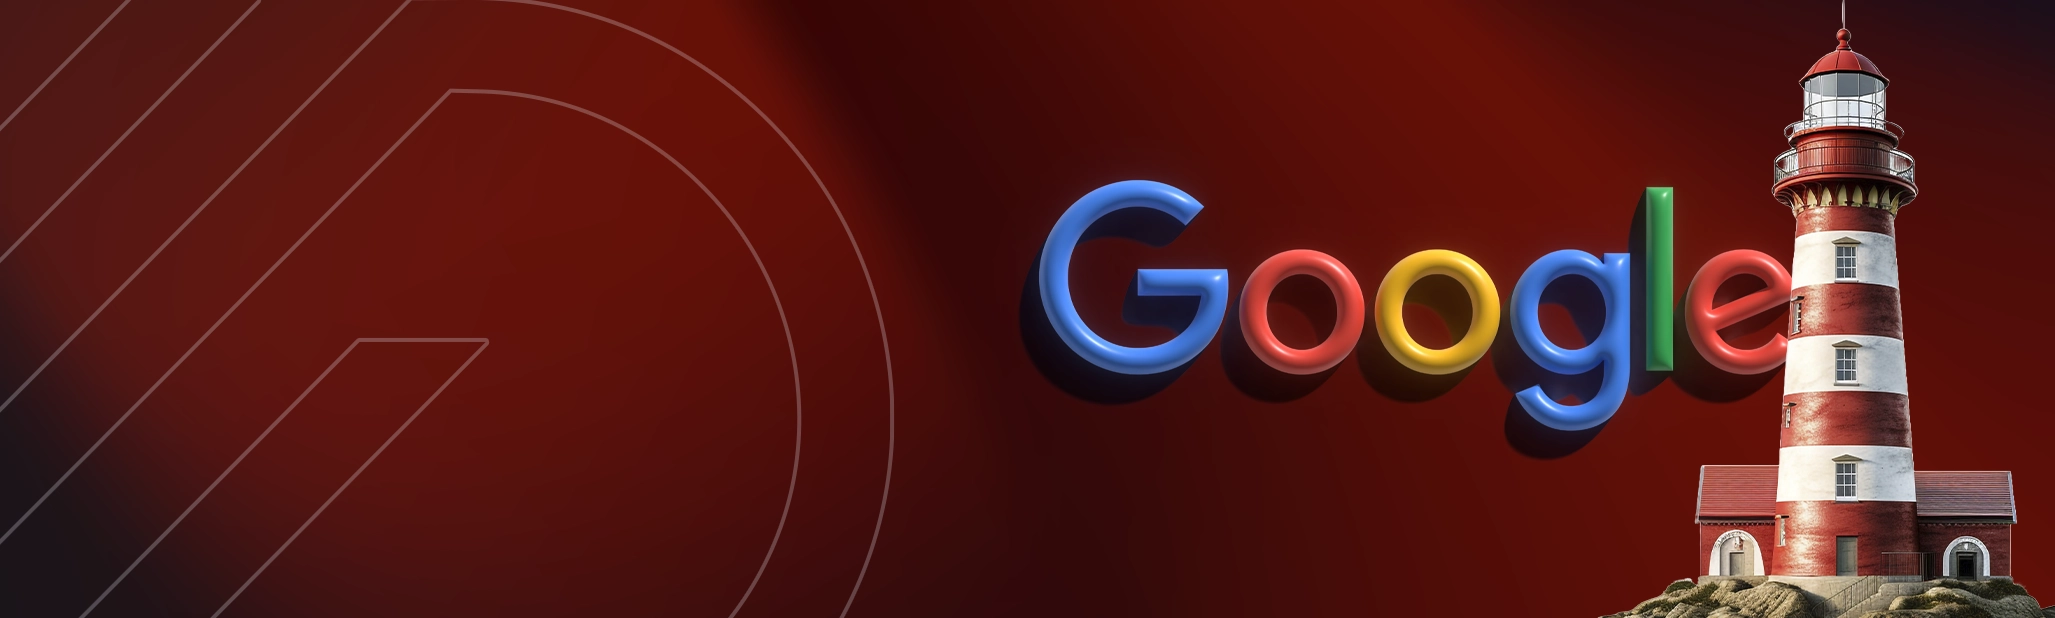 Google Lighthouse Ne İşe Yarar?